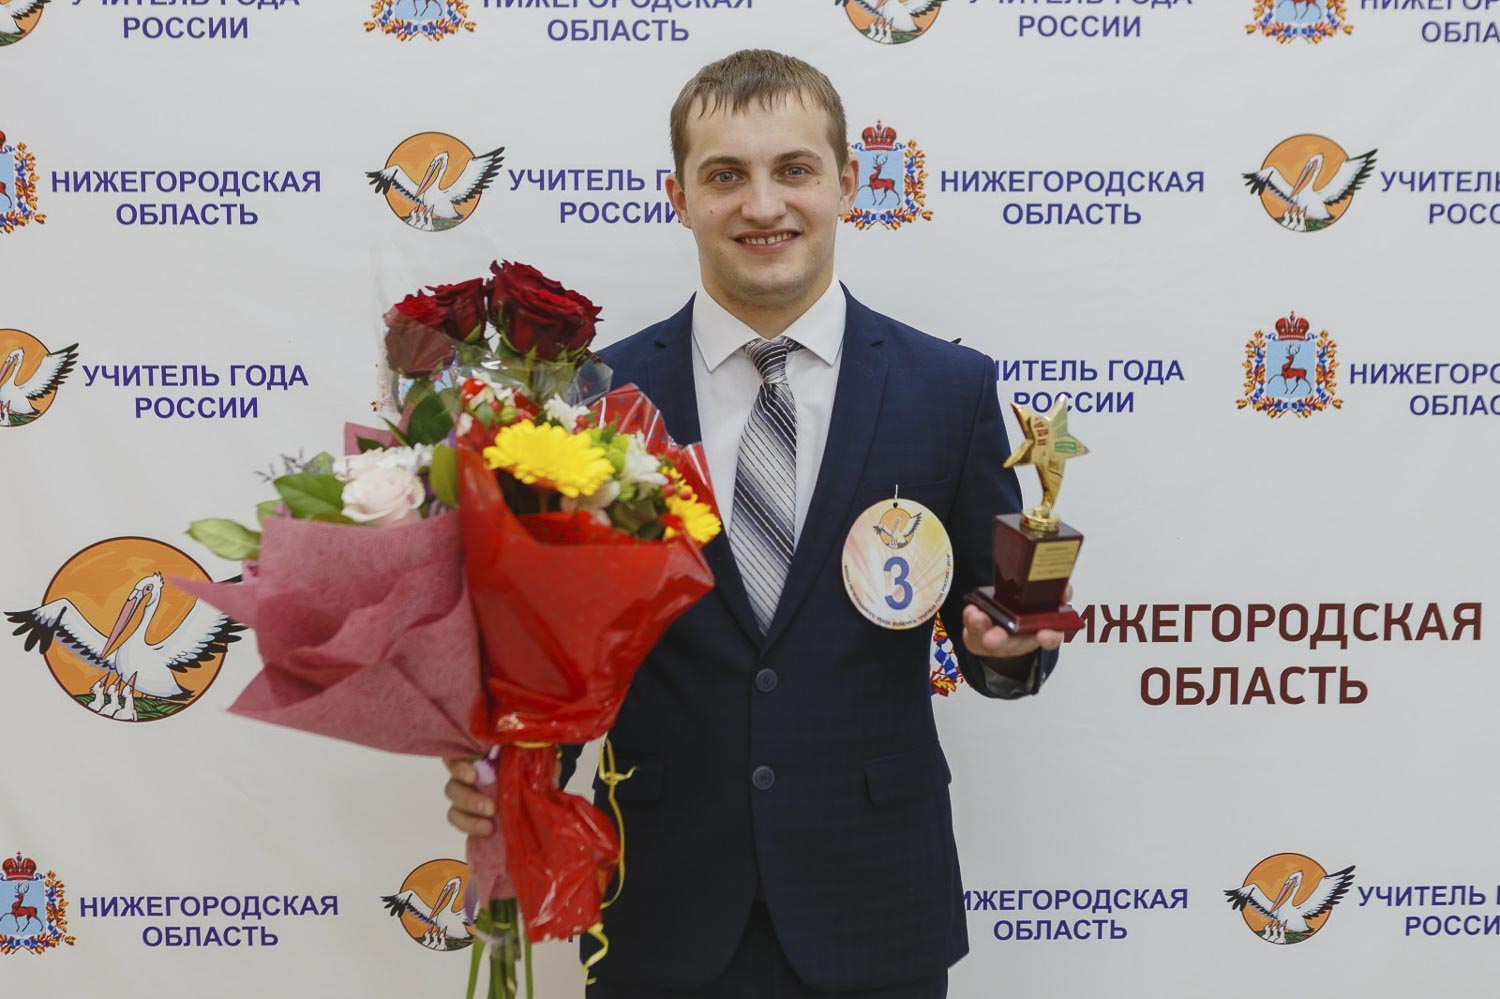 Выпускник Мининского университета, учитель физической культуры стал лауреатом конкурса «Учитель года России-2018»